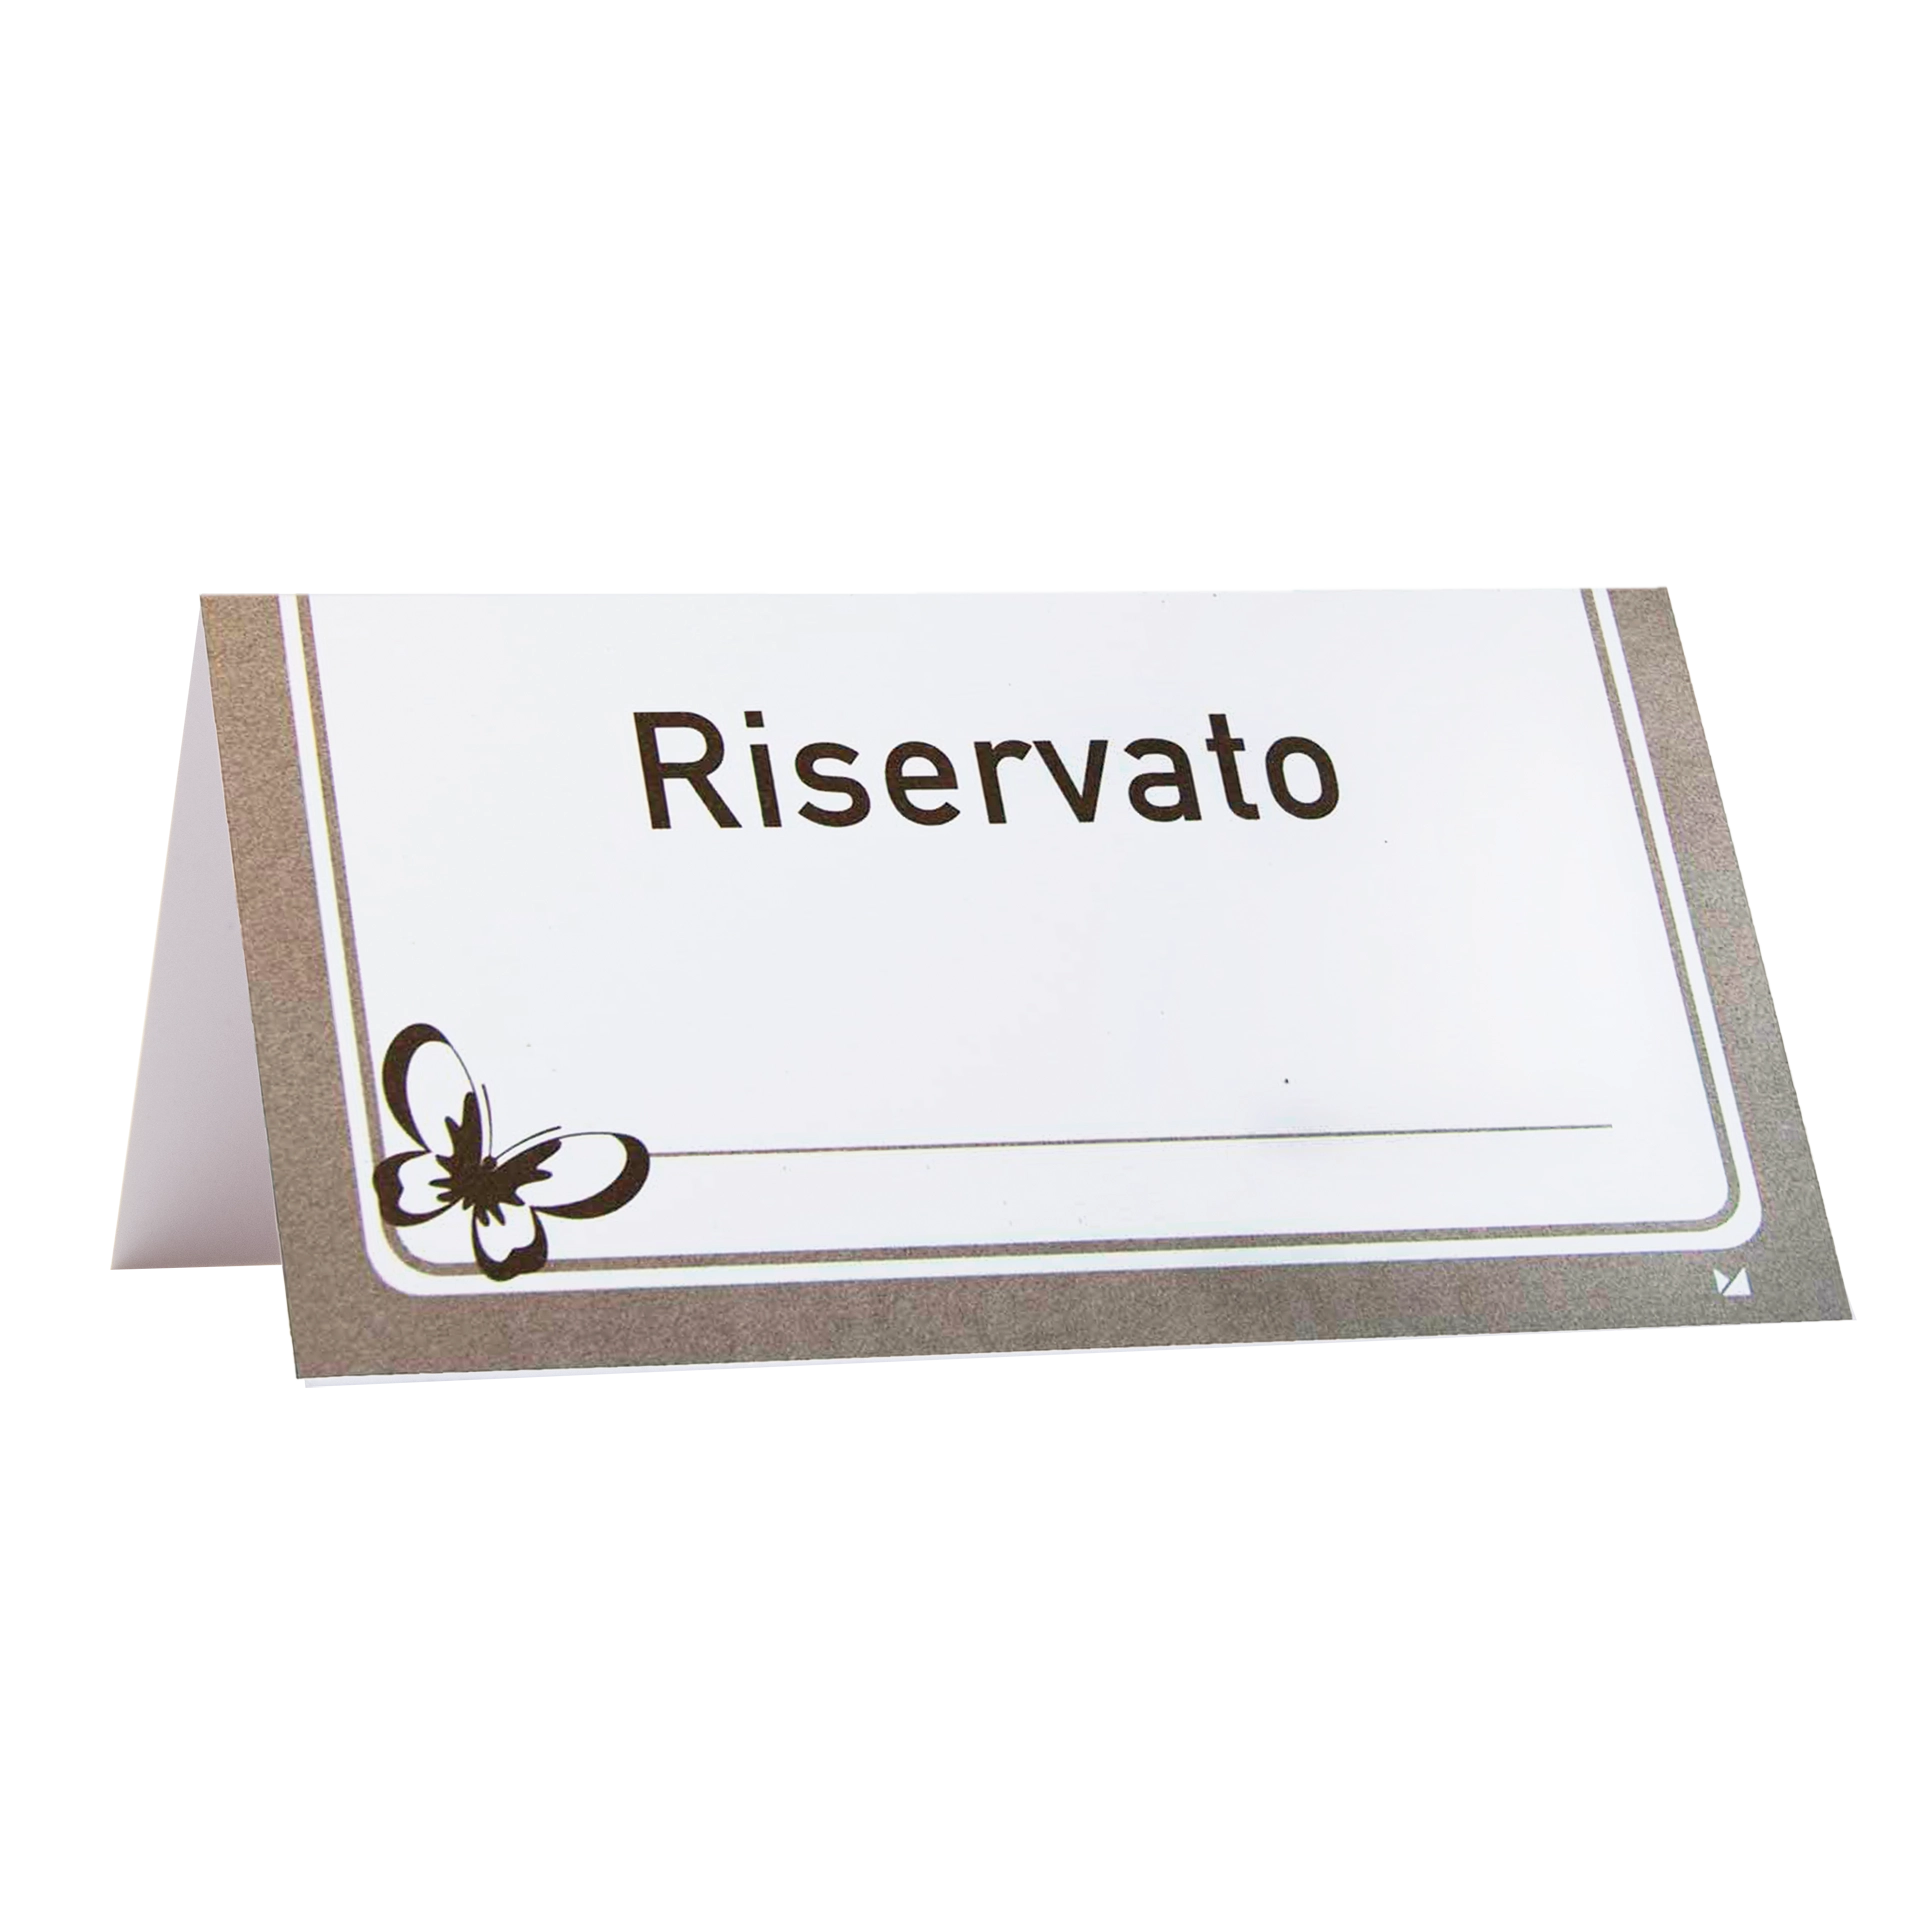 Reserviertkarte | 'Riservato/Reserved' Karton 300 g/m² 12x6,5 cm